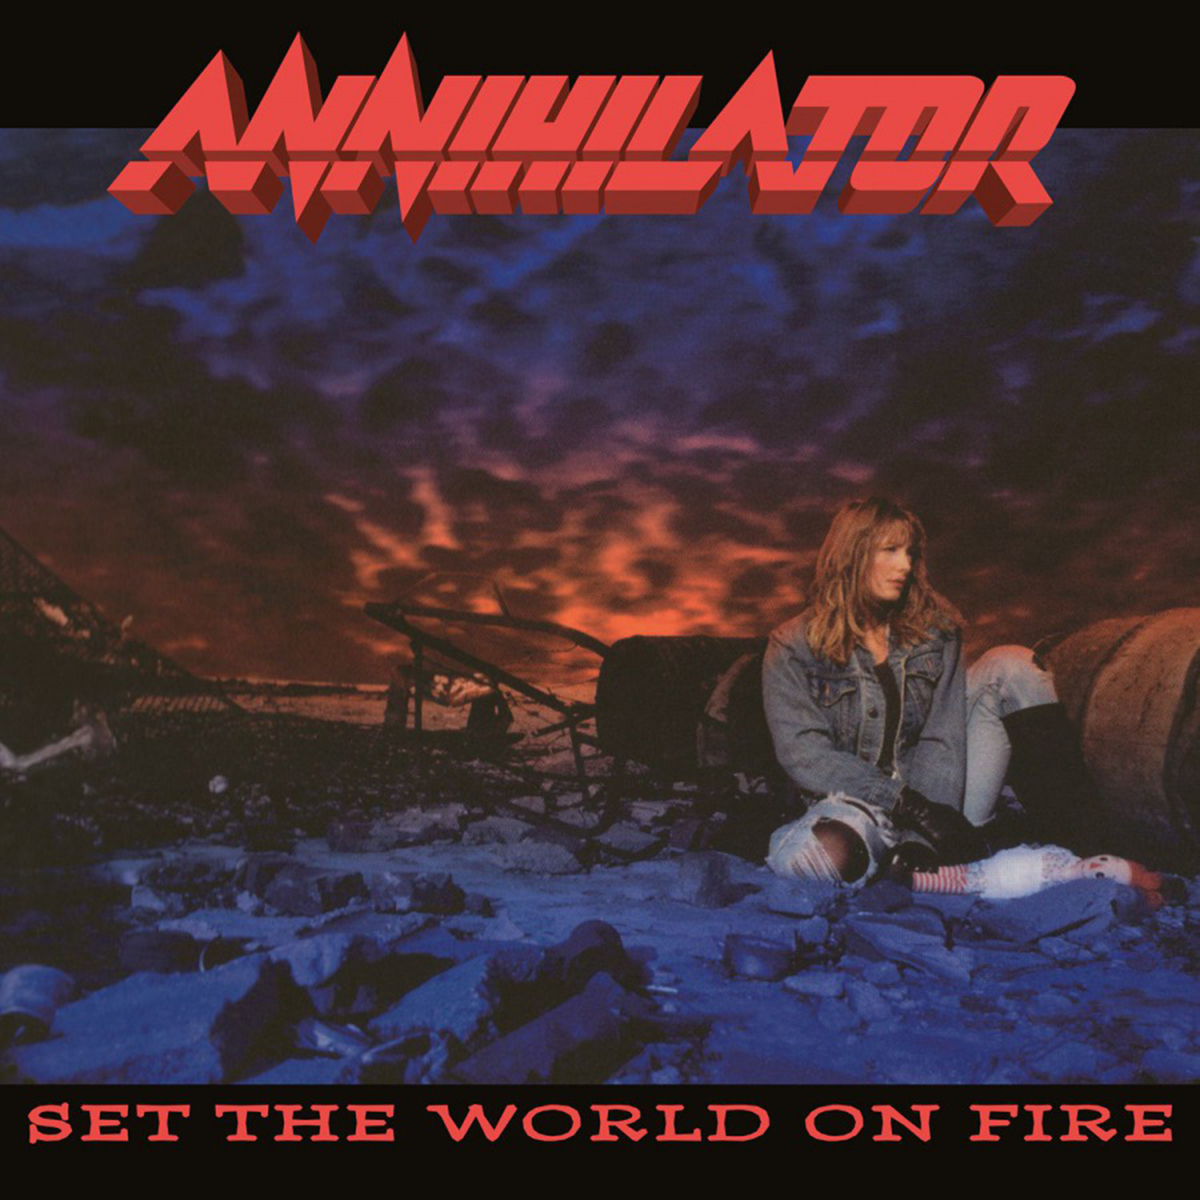 виниловая пластинка annihilator set the world on fire 8719262028272 Виниловая пластинка Annihilator, Set The World On Fire (8719262028272)